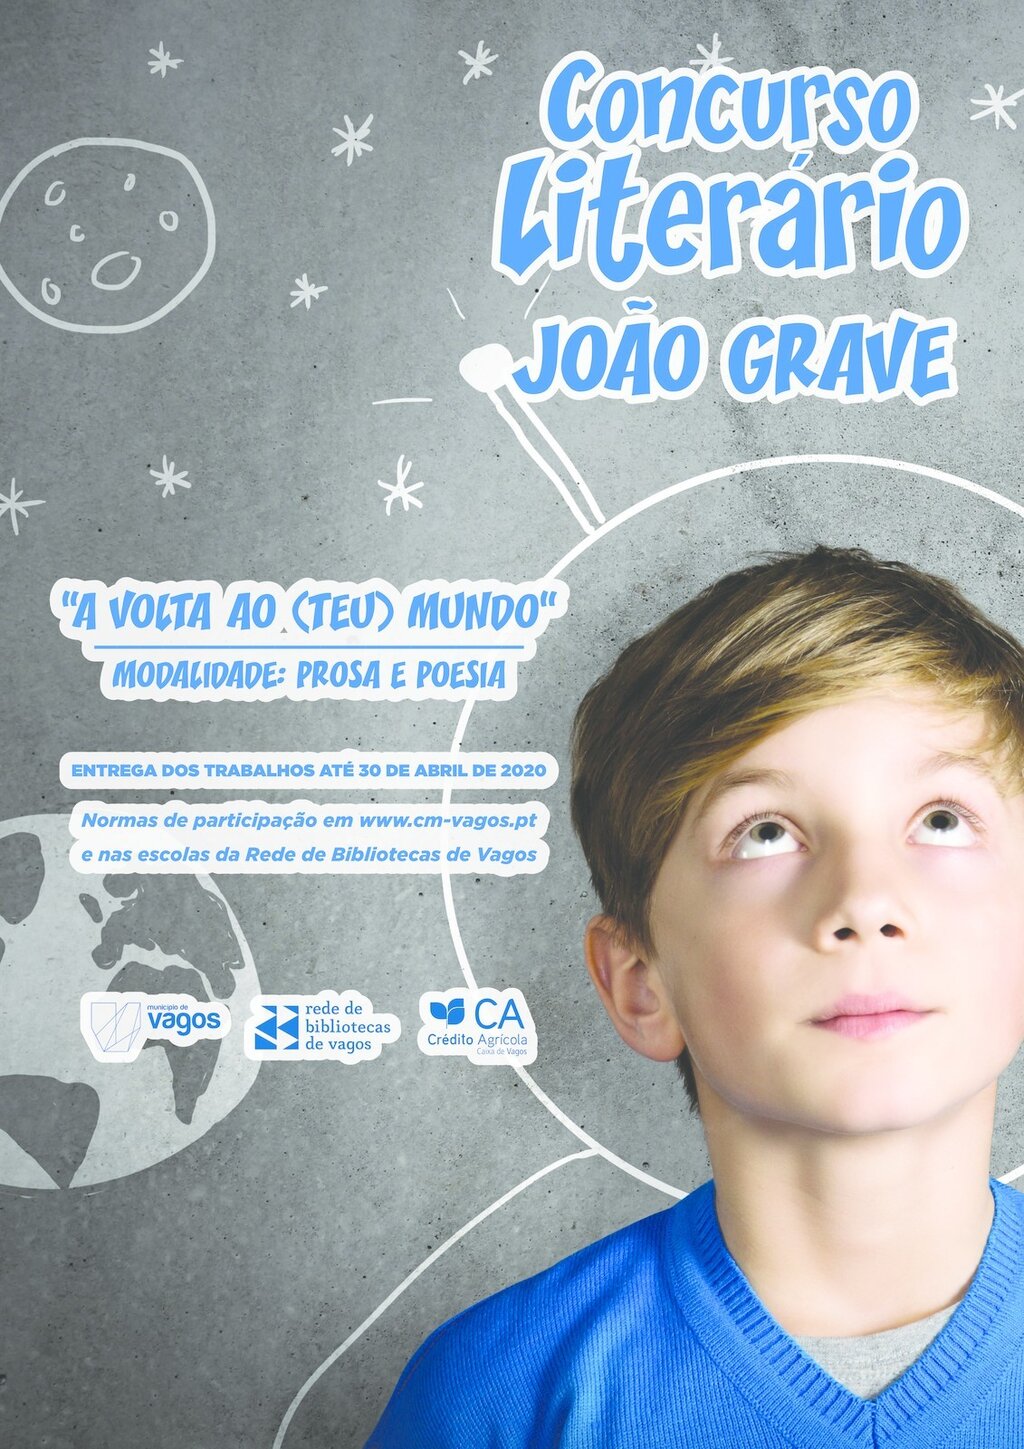 CONCURSO LITERÁRIO “JOÃO GRAVE”